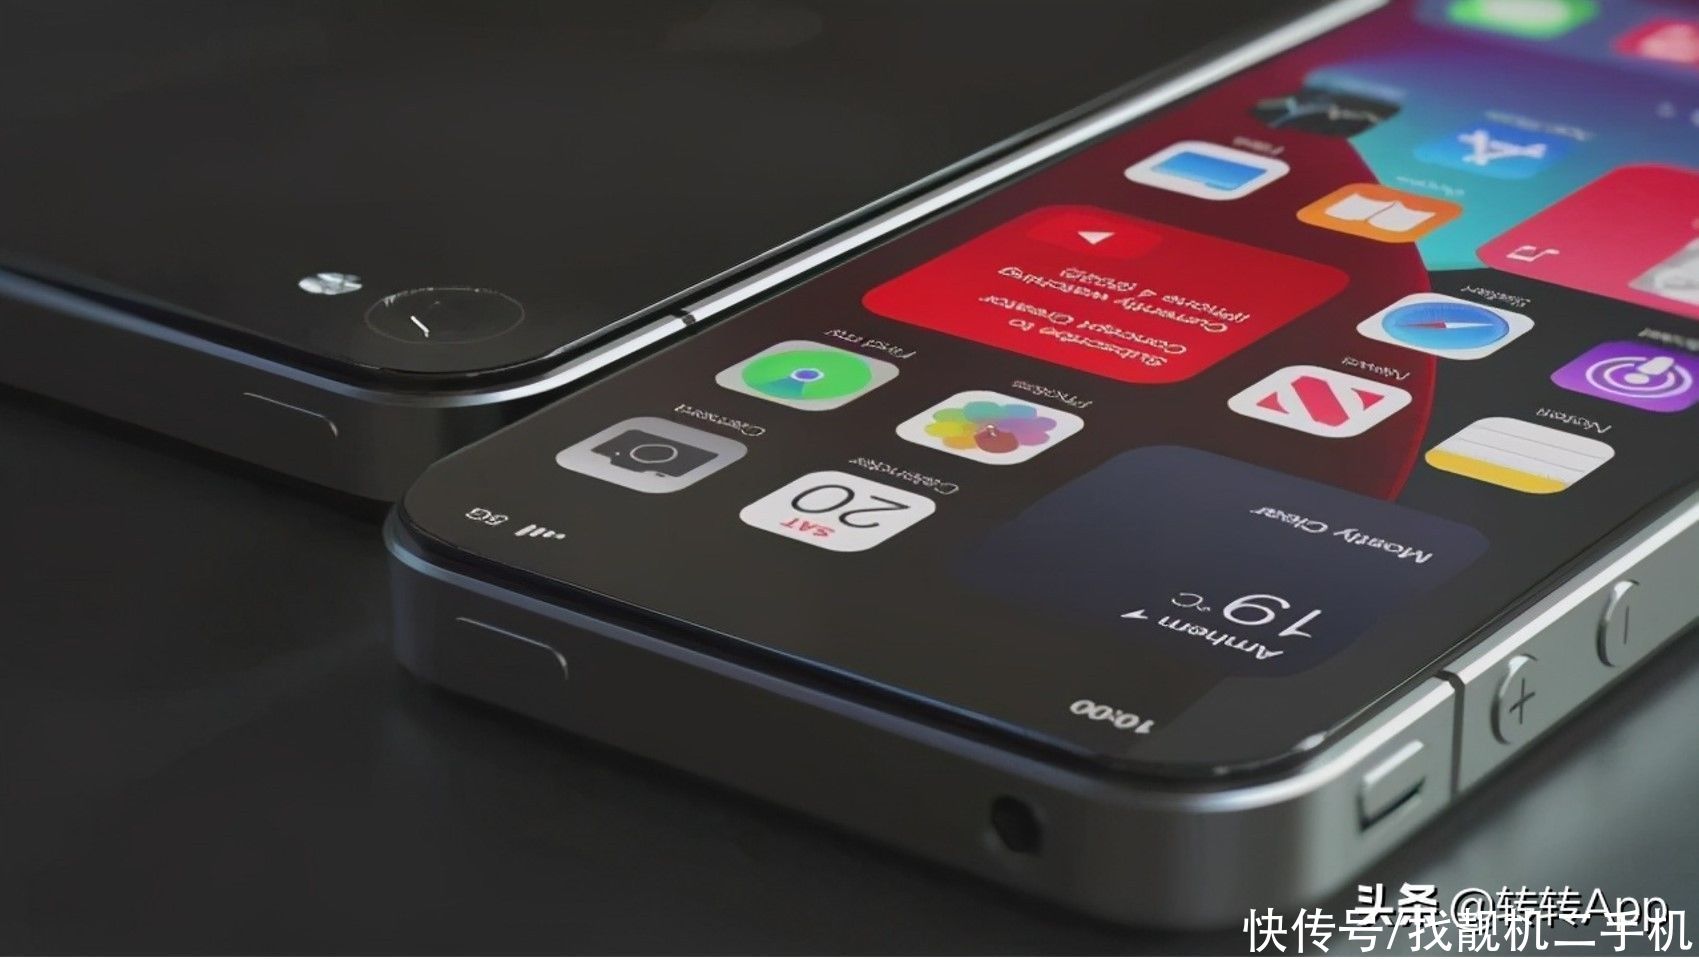 刘海屏|新版iPhone4曝光；3.5英寸刘海屏+双卡双待，耳机孔也保留了